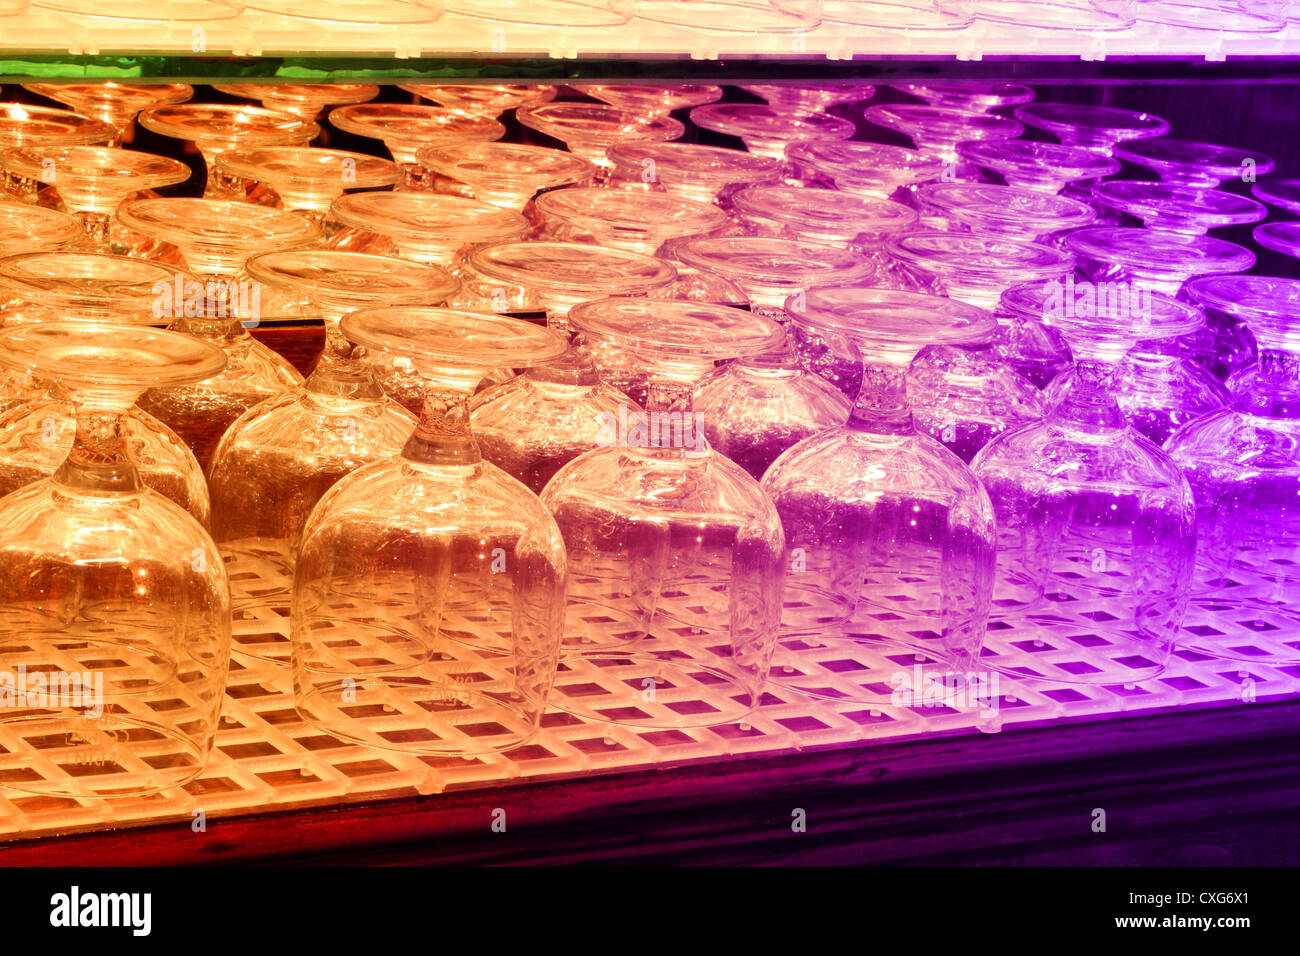 Una immagine di sfondo di bicchieri su un ripiano di pub che è illuminato da luci colorate Foto Stock